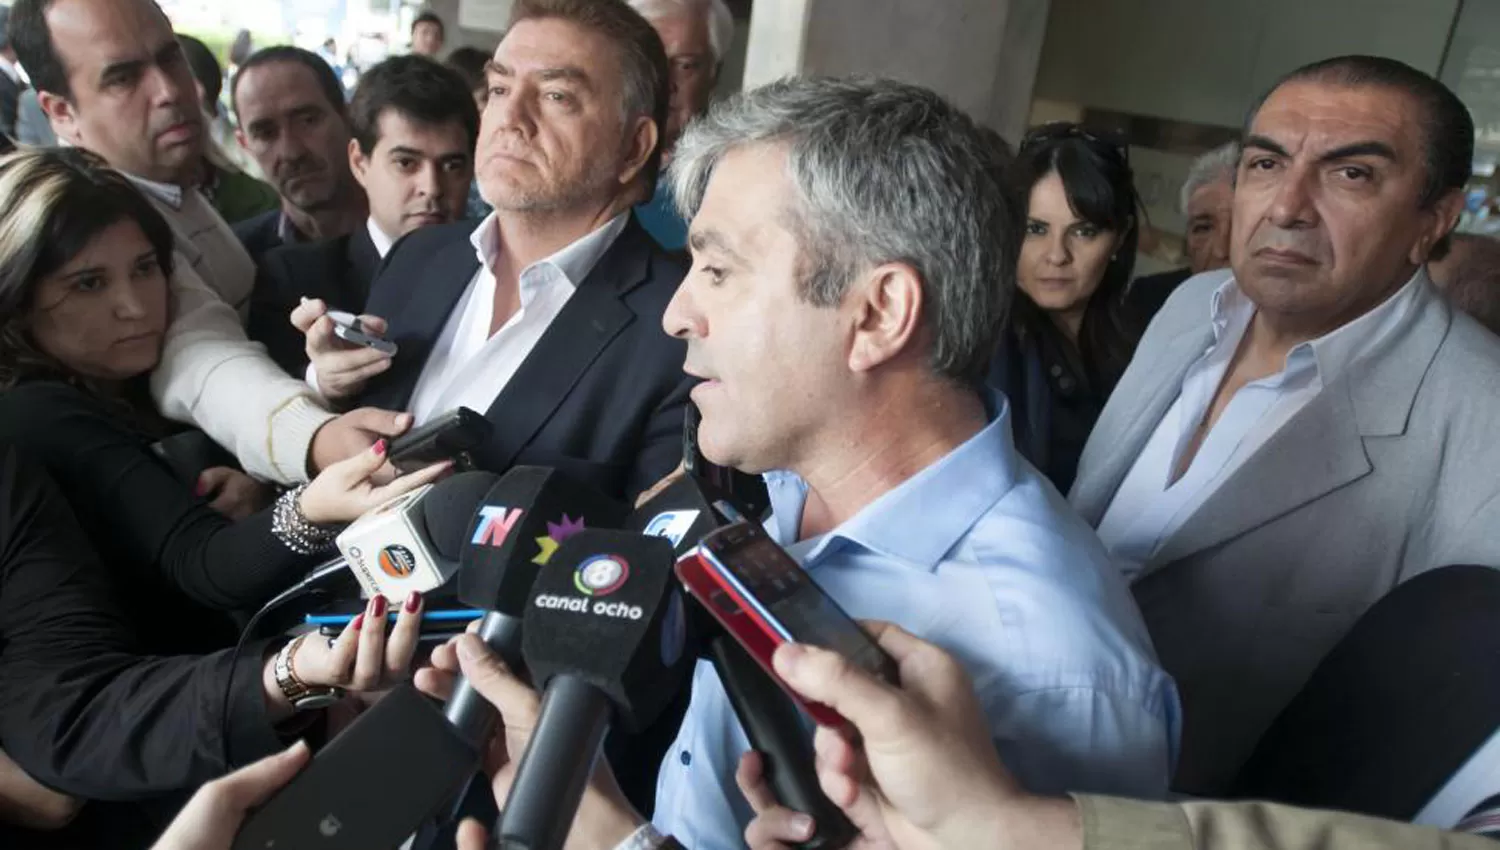 JOSÉ CANO Y DOMINGO AMAYA. Los ex candidatos hablan con la prensa durante los convulsionados días posteriores a las elecciones de 2015. ARCHIVO